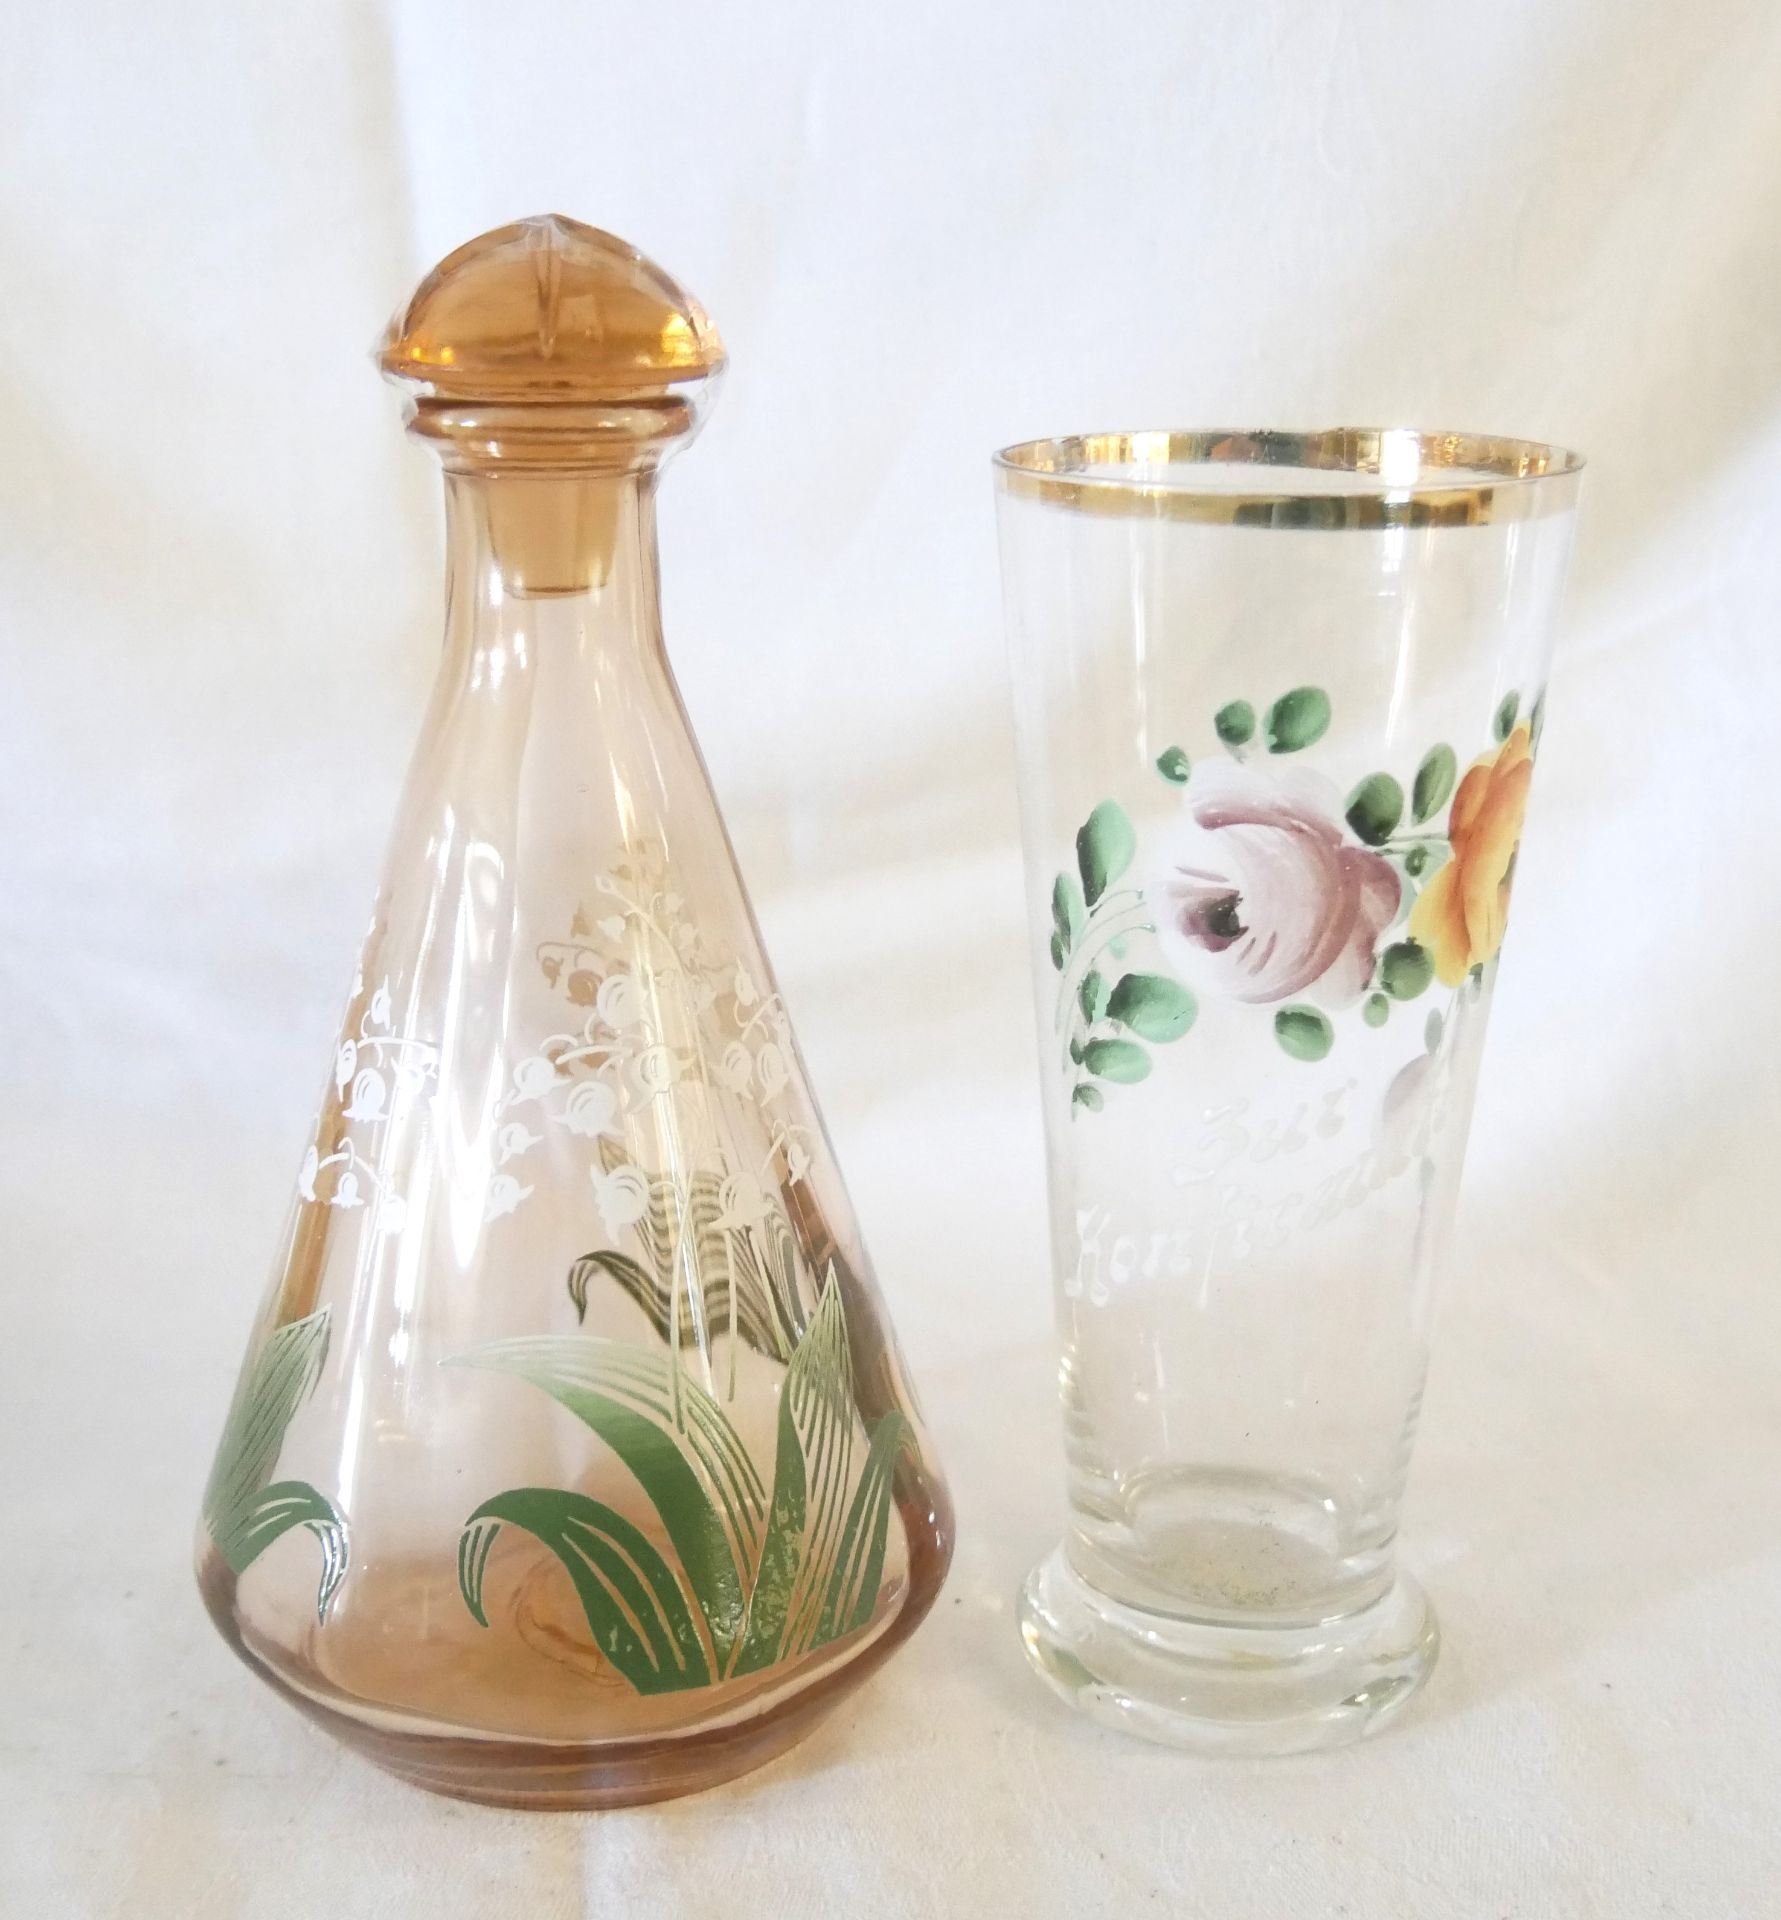 2 Jugendstil Gläser, dabei 1 Glas mit floralem Design "Zur Konfirmation" sowie eine kleine Karaffe